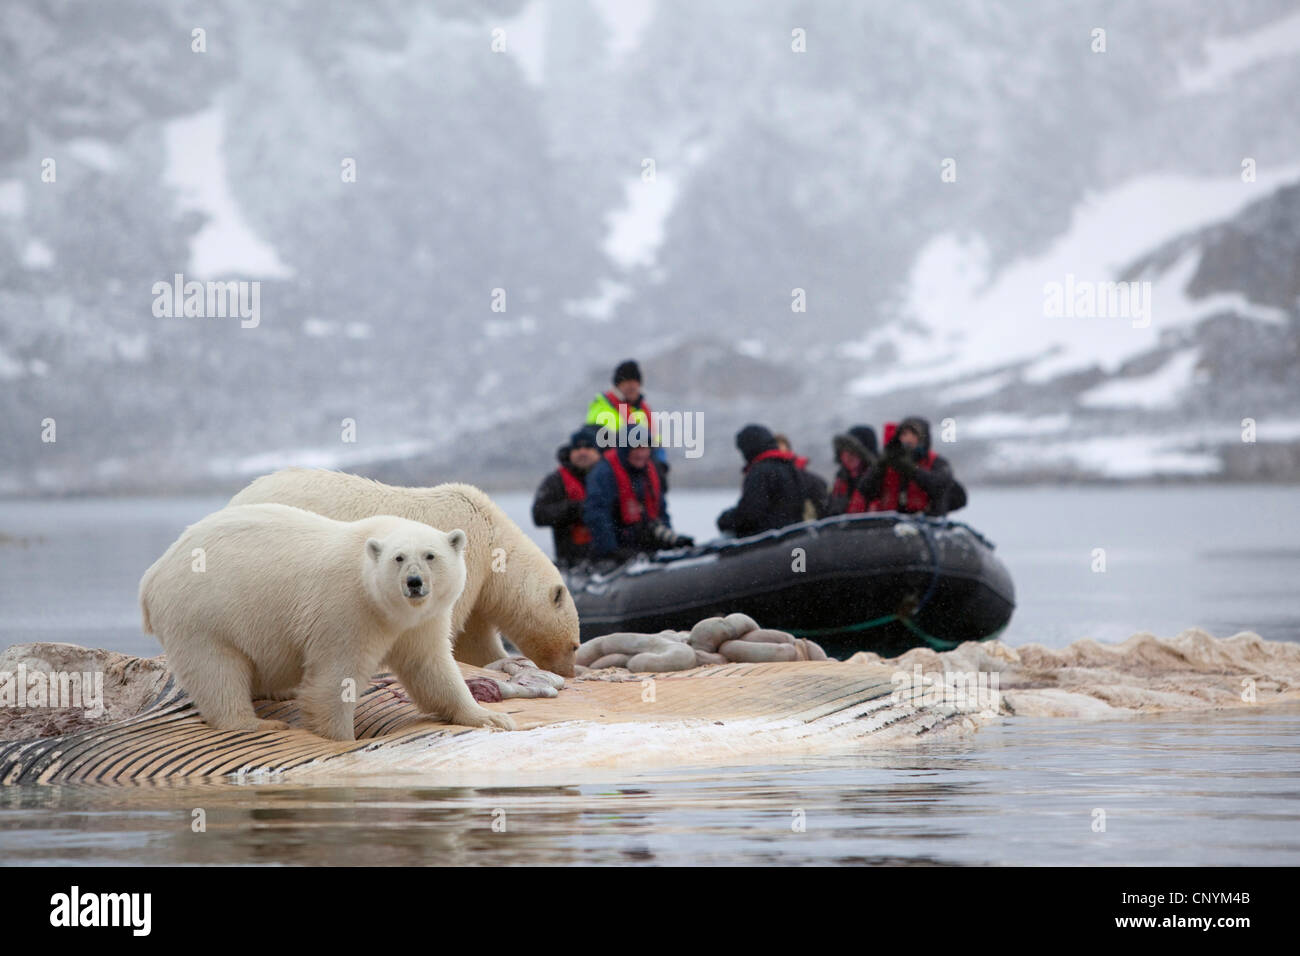 Orso polare (Ursus maritimus), due animali alimentazione permanente su una balena cadavere, Norvegia Isole Svalbard Svalbard e isole Foto Stock